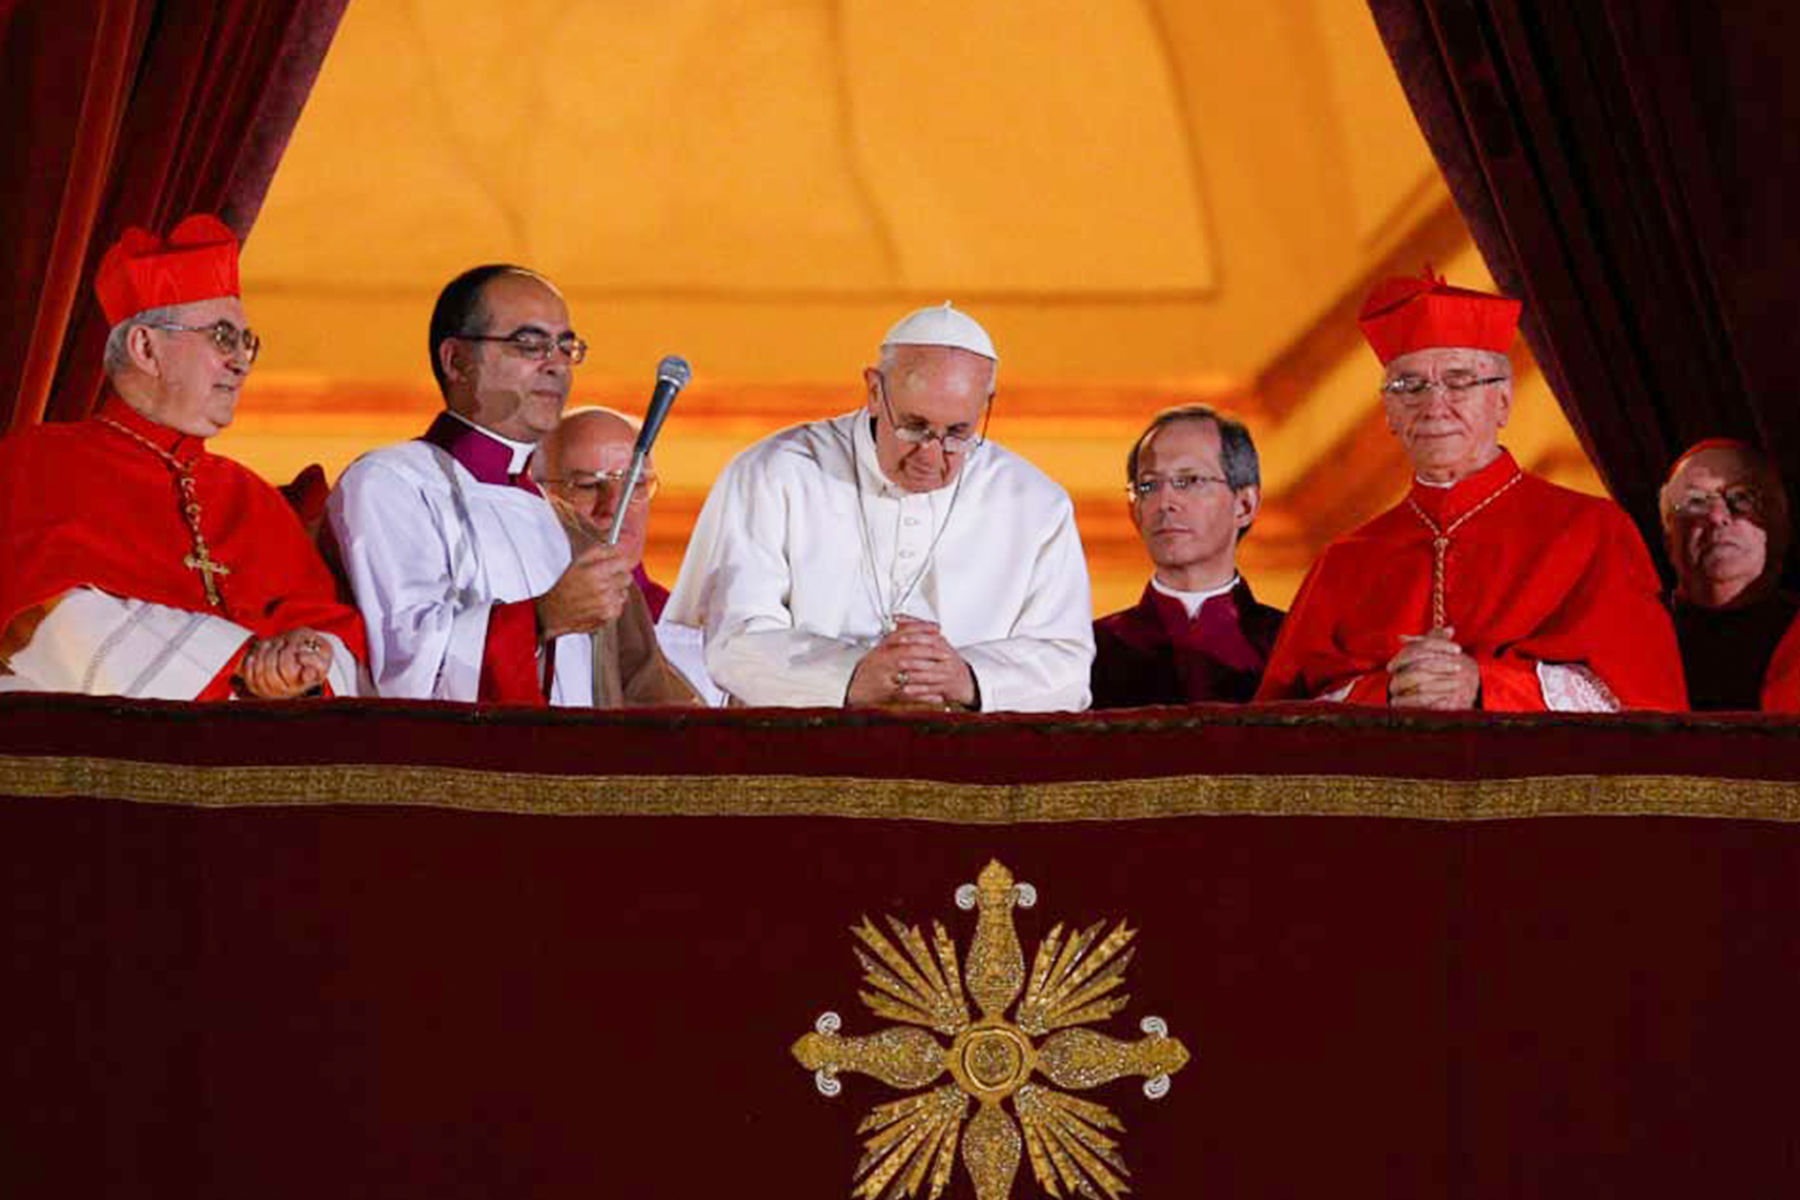 Сьогодні — десята річниця обрання Папи Франциска. Як це було?